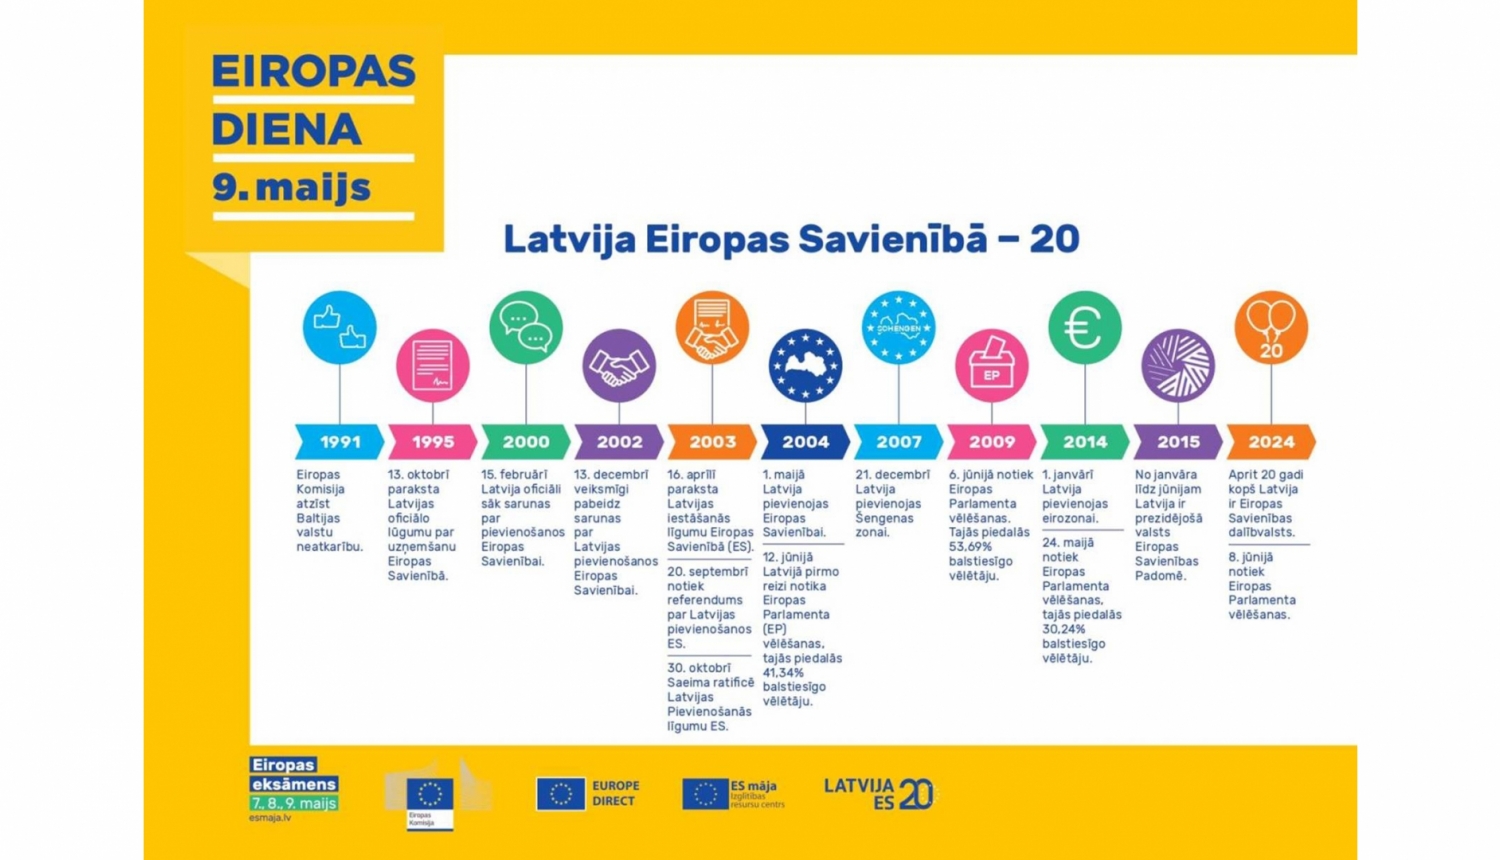 Eiropas diena 9. maijs. Latvijai Eiropas Savienībā - 20. Laika līnijā attēloti svarīgākie fakti Latvijas un Eiropas Savienības attiecību vēsturē